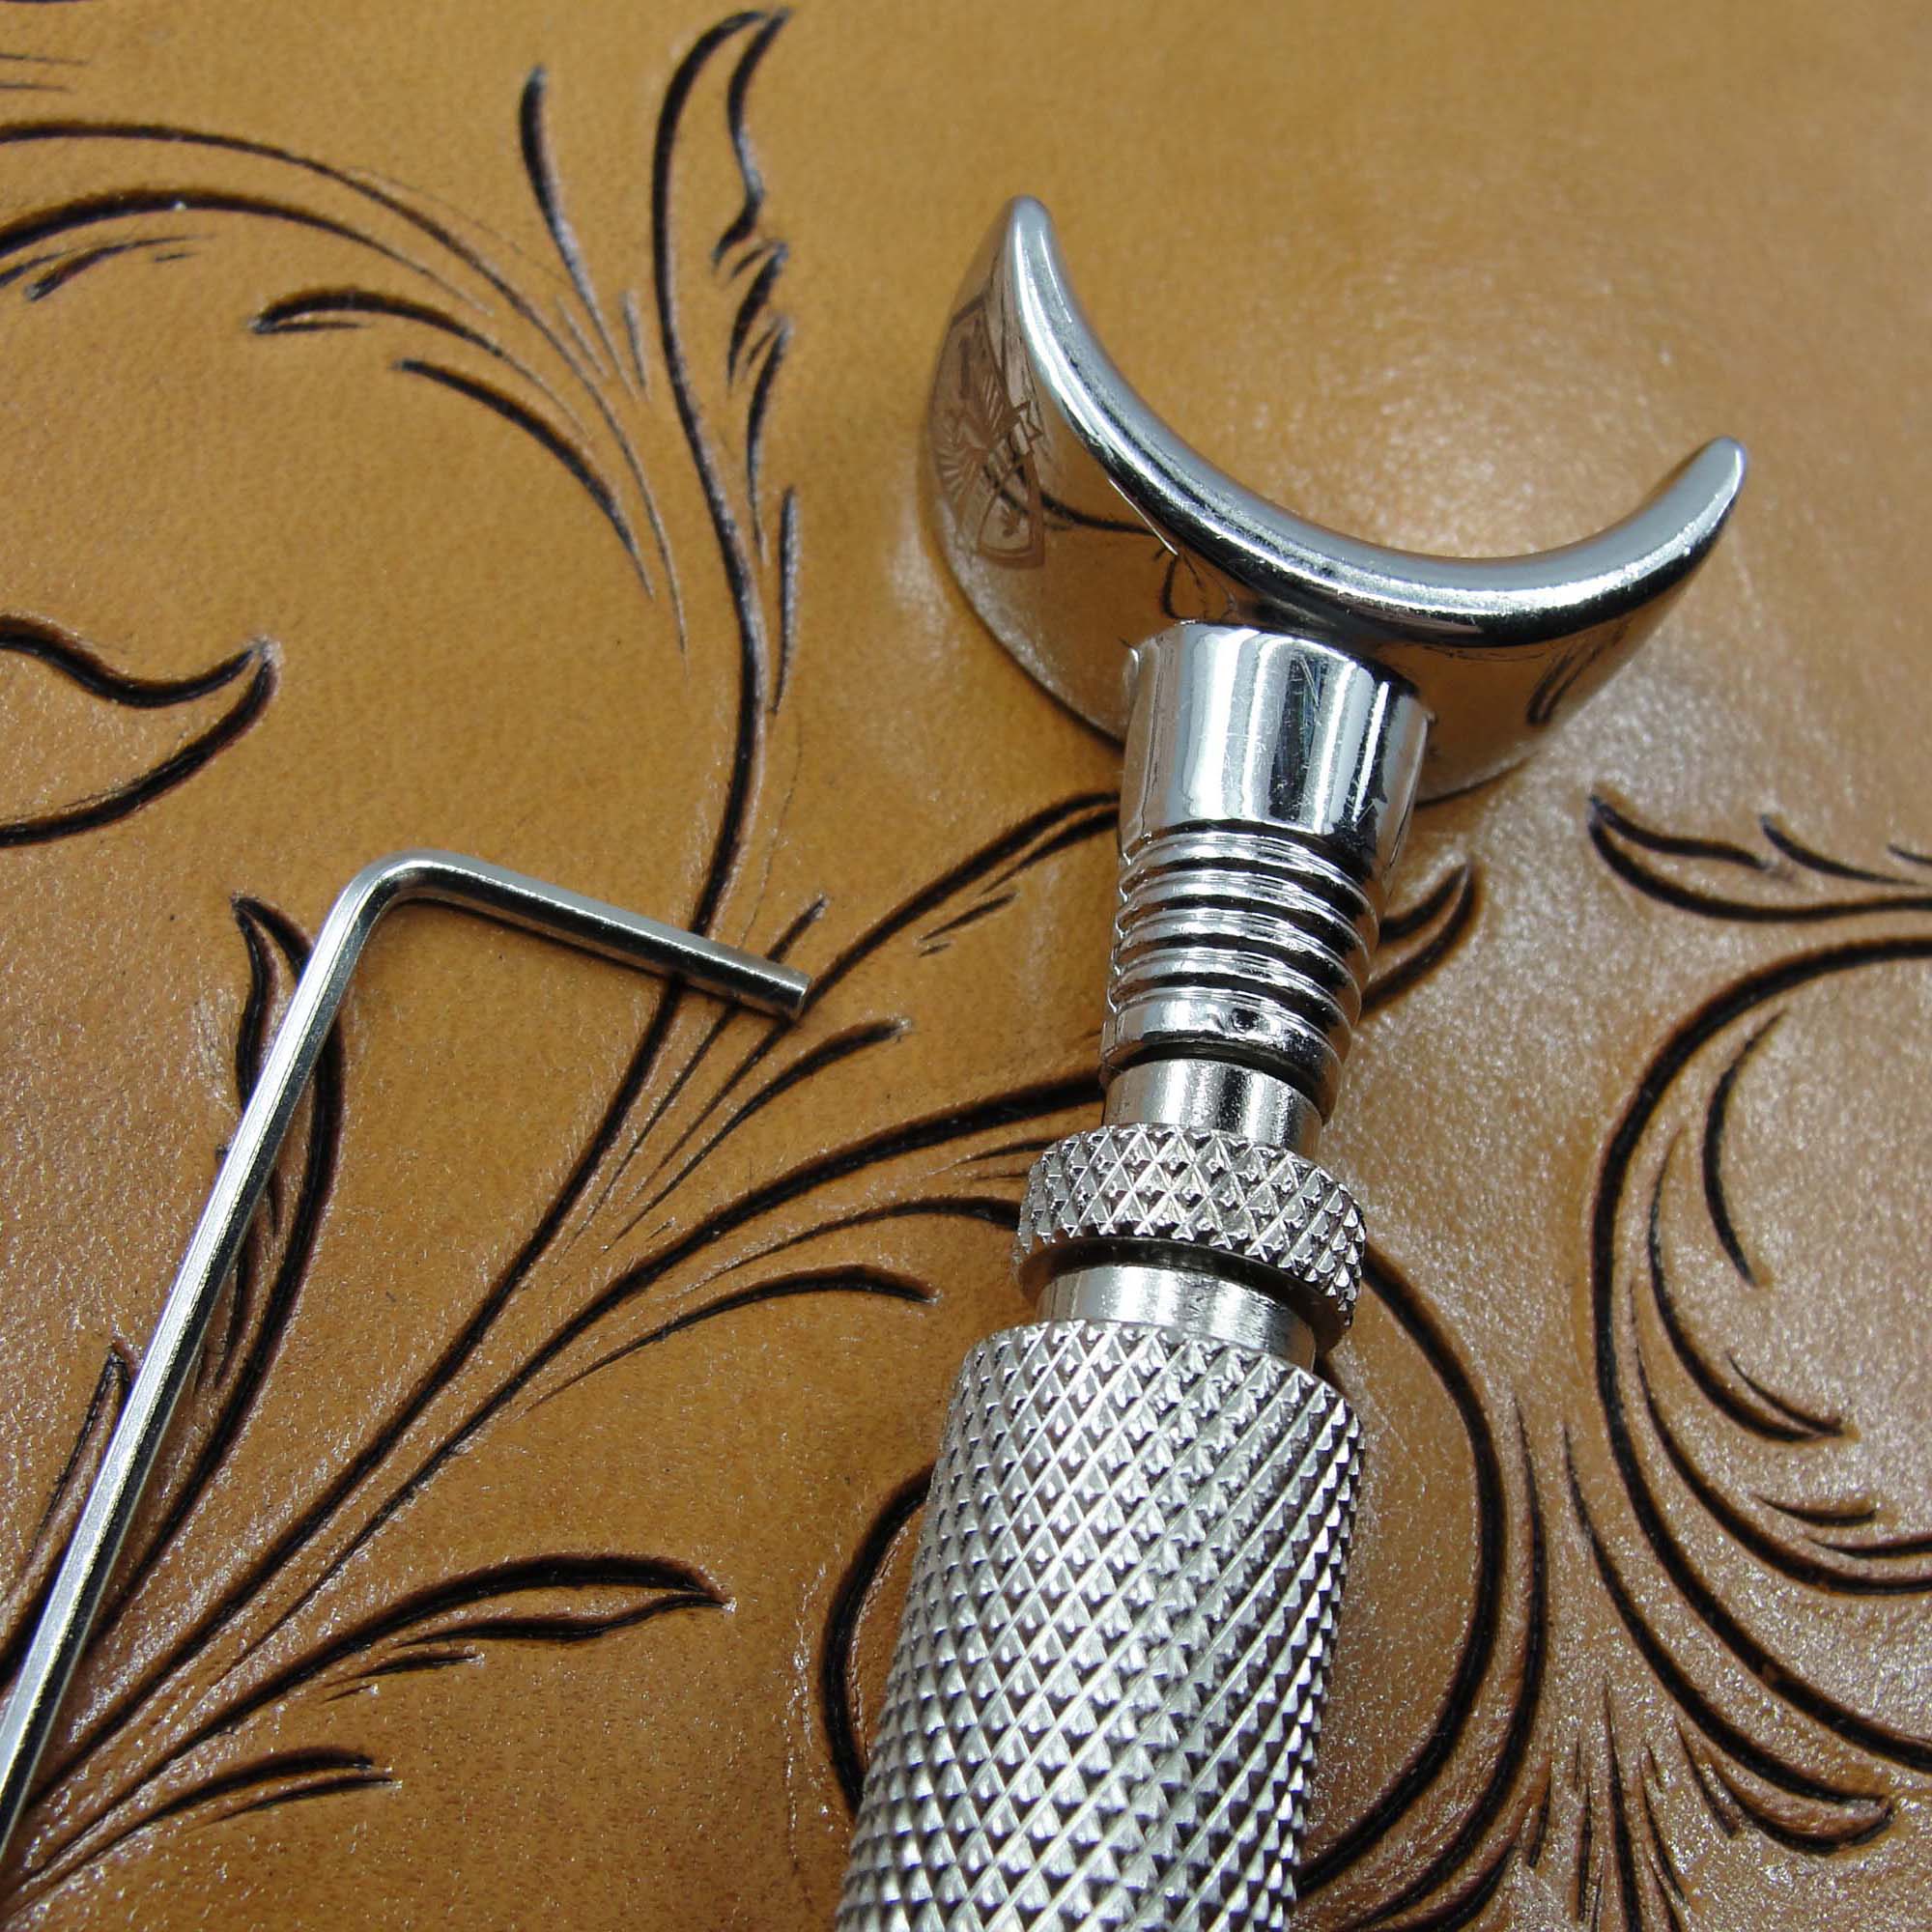 Adjustable Swivel Knife - Leathercraft Tool | Pro Leather Carvers Medium